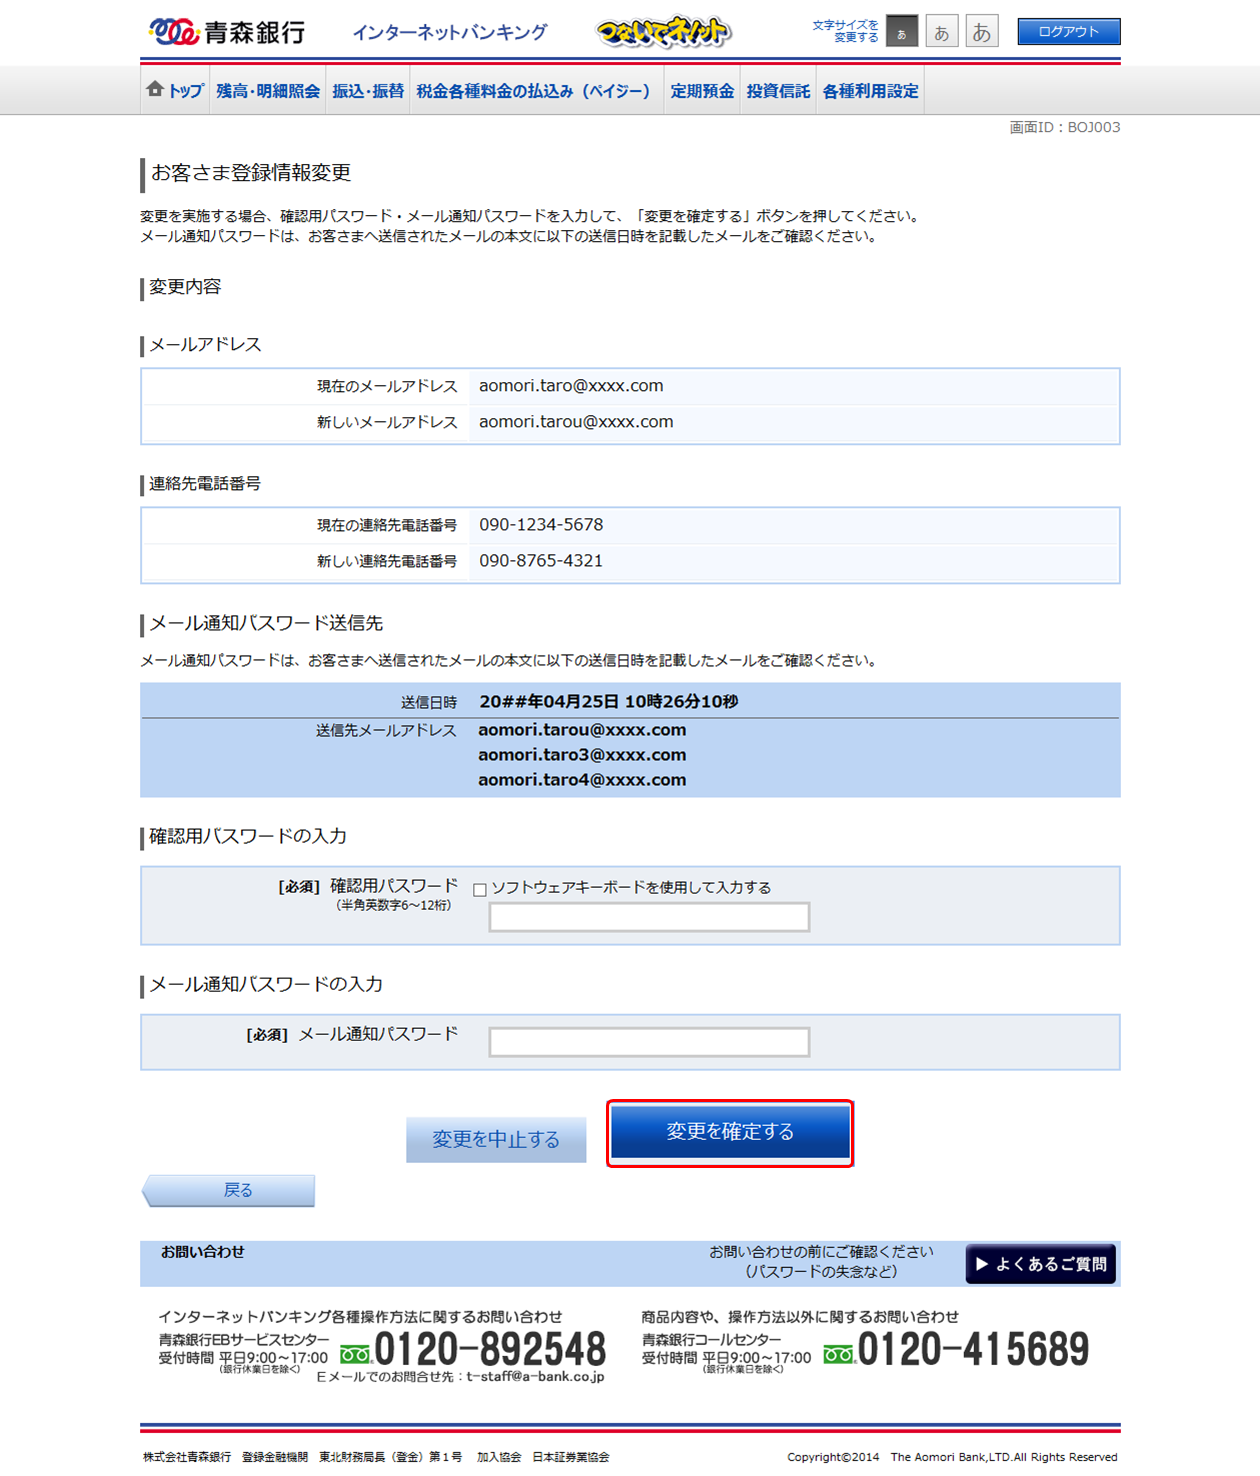 青森銀行 インターネットバンキングサービス オンラインマニュアル